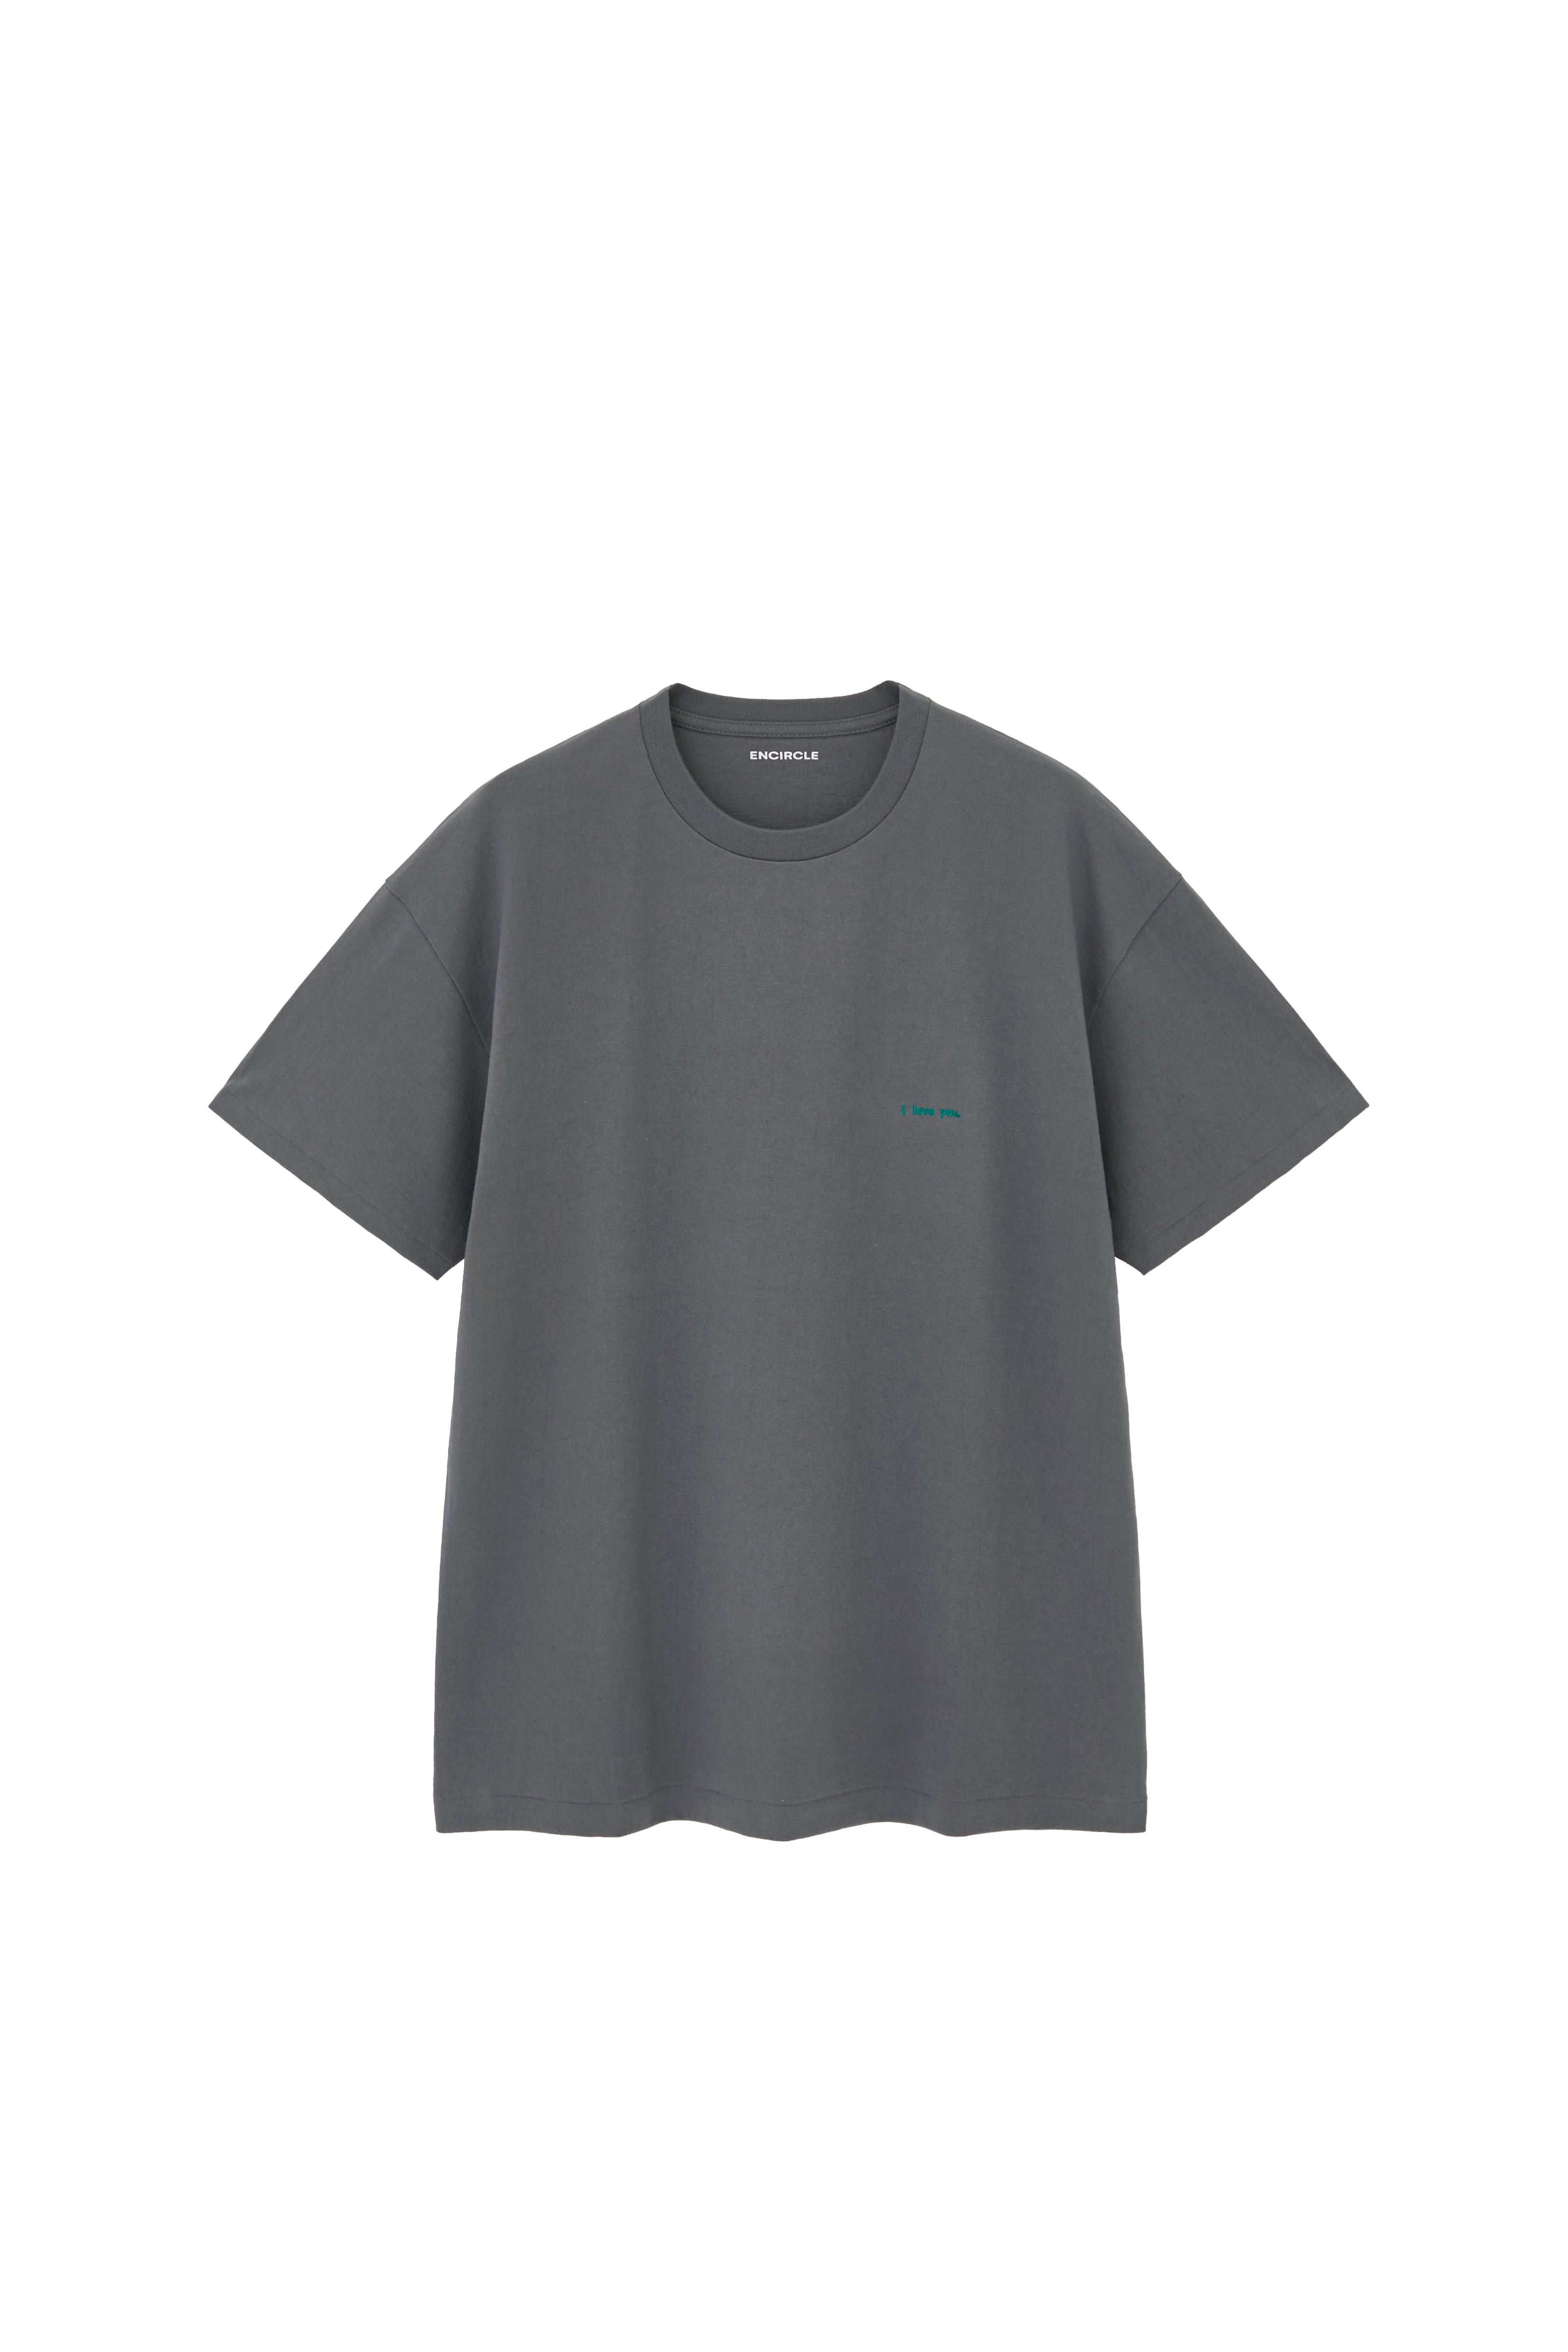 Encircle love letter Tシャツ　size 1 SALE‼️